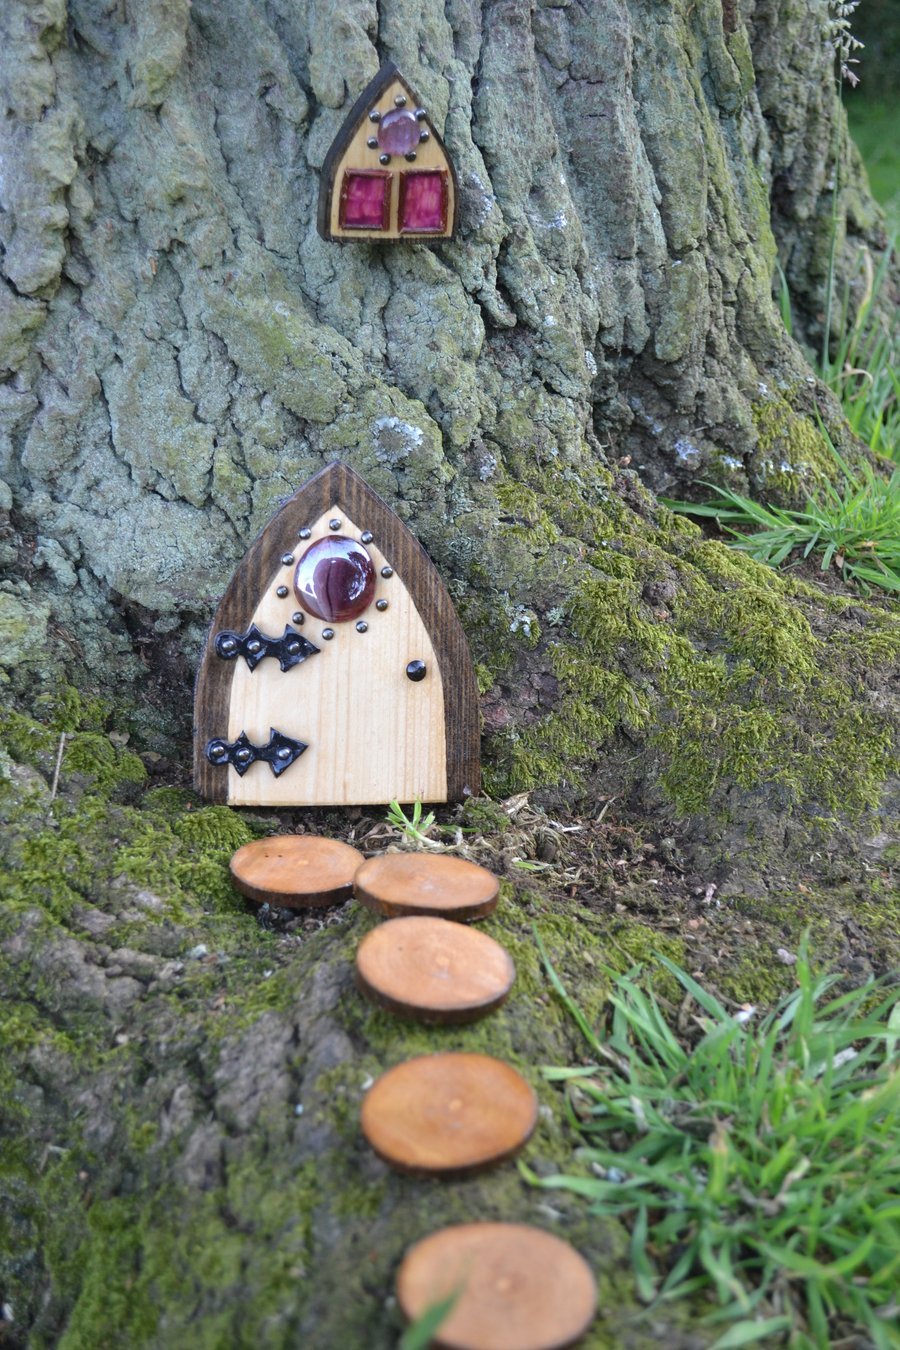 Garden Fairy, Gnome, Hobbit, Elf Forest door kit (Green pebbles)